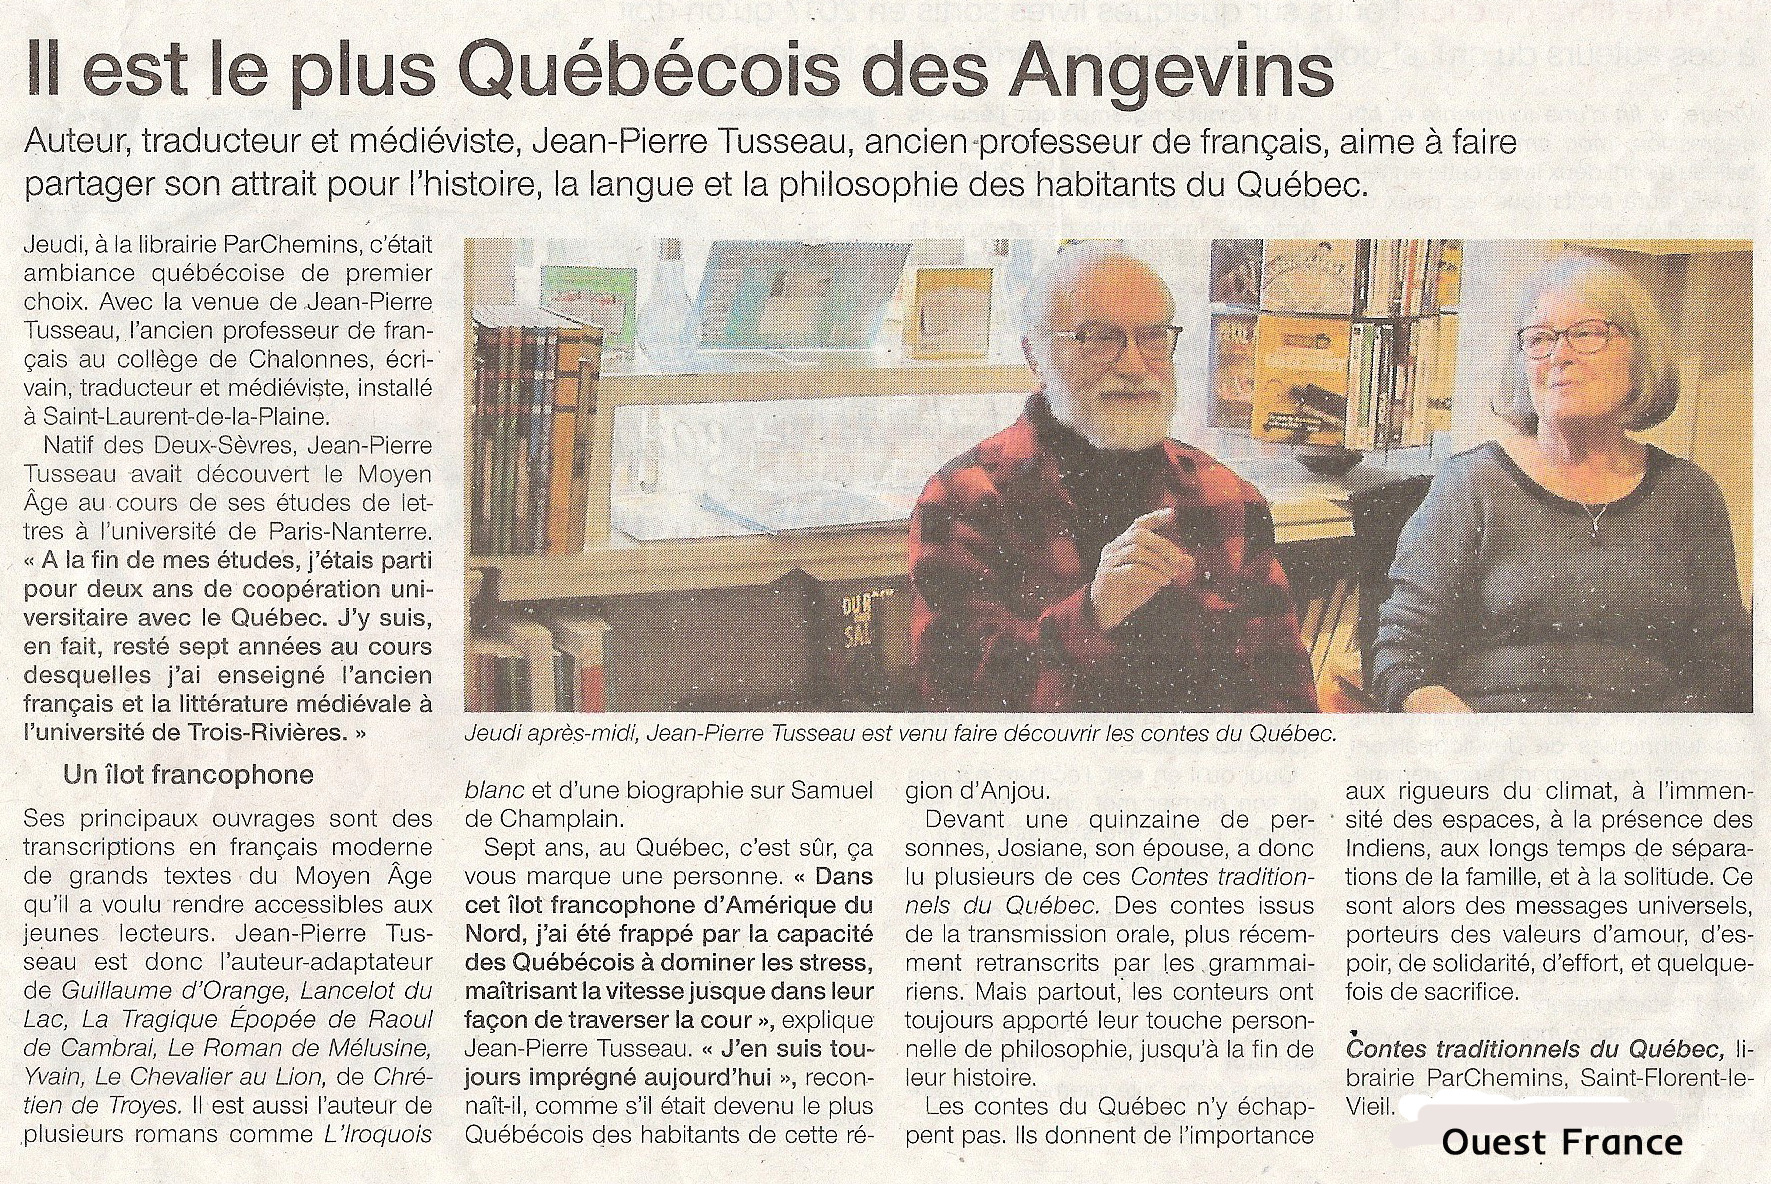 Le plus Qu�b�cois des Angevins - un article de Ouest France - Photo web-tusseau-numerisation_20.jpg